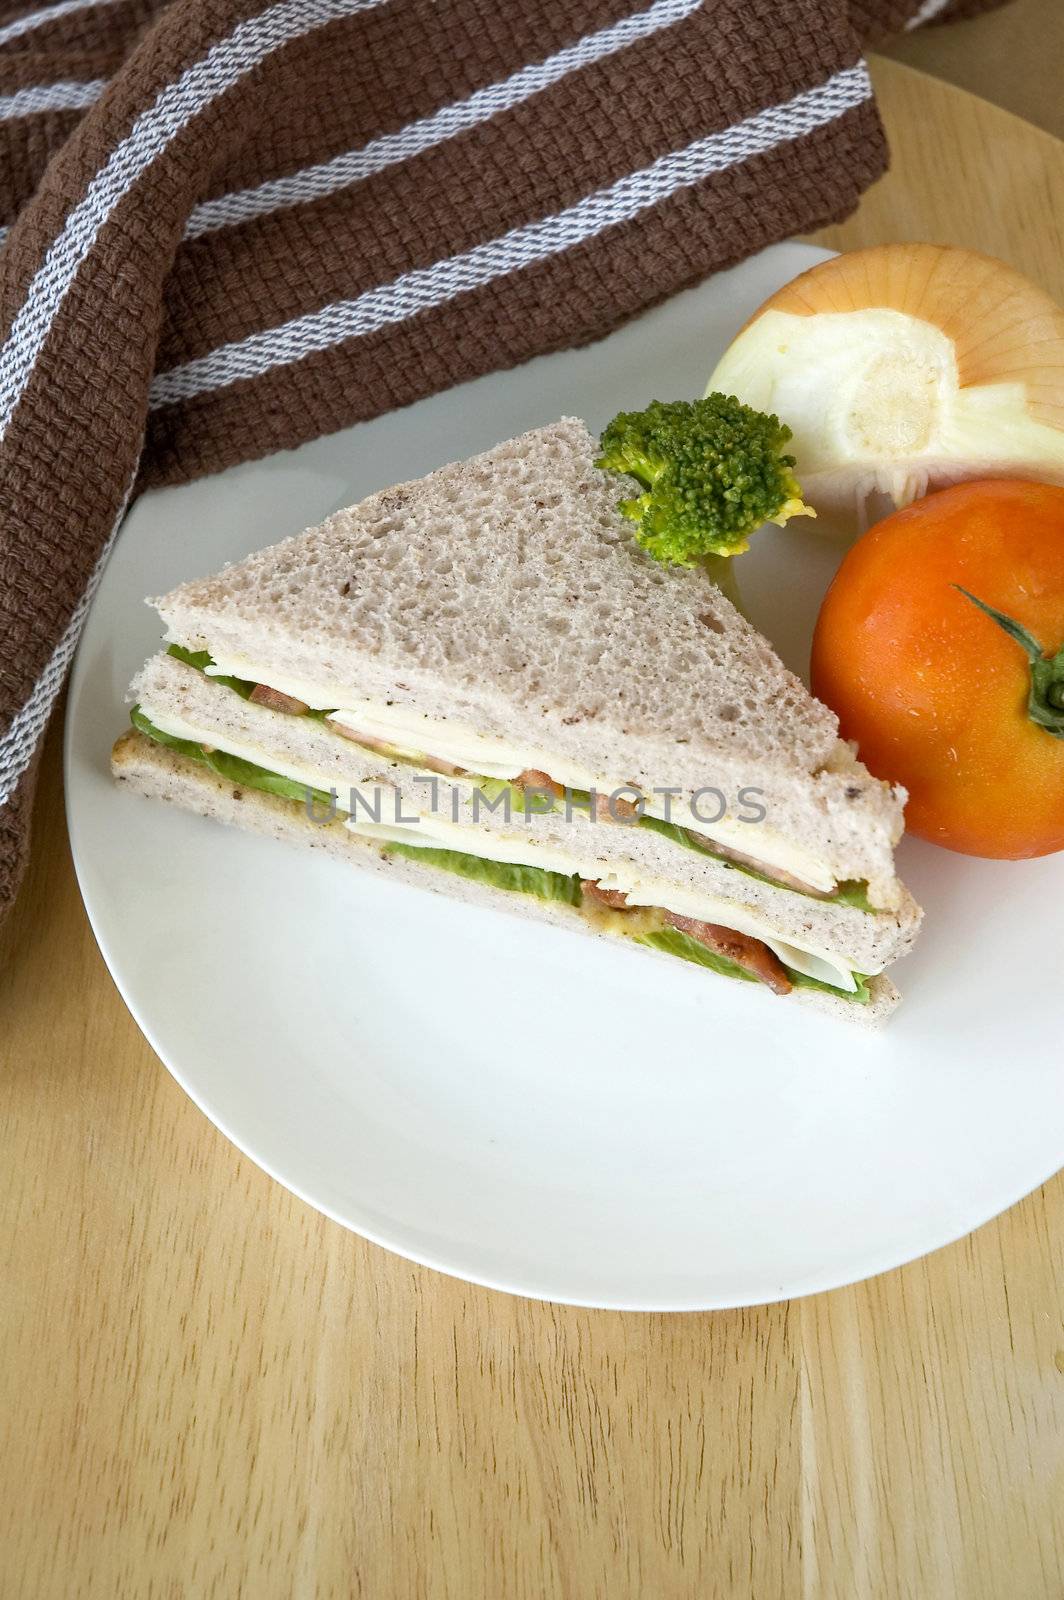 healthy sandwich by daniaphoto